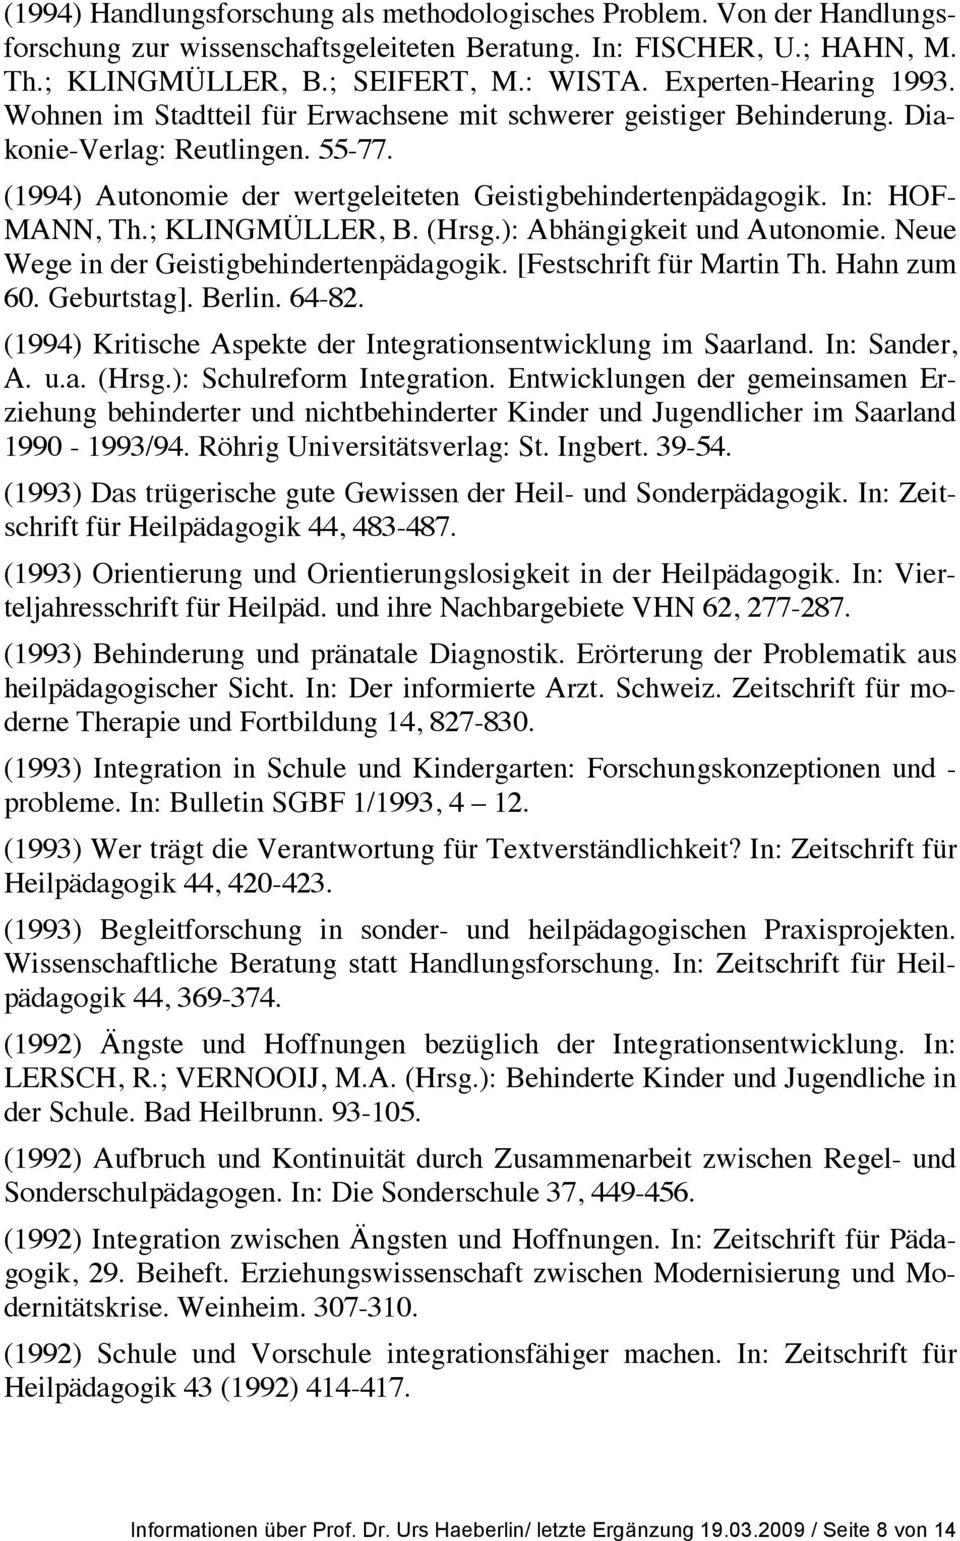 In: HOF- MANN, Th.; KLINGMÜLLER, B. (Hrsg.): Abhängigkeit und Autonomie. Neue Wege in der Geistigbehindertenpädagogik. [Festschrift für Martin Th. Hahn zum 60. Geburtstag]. Berlin. 64-82.